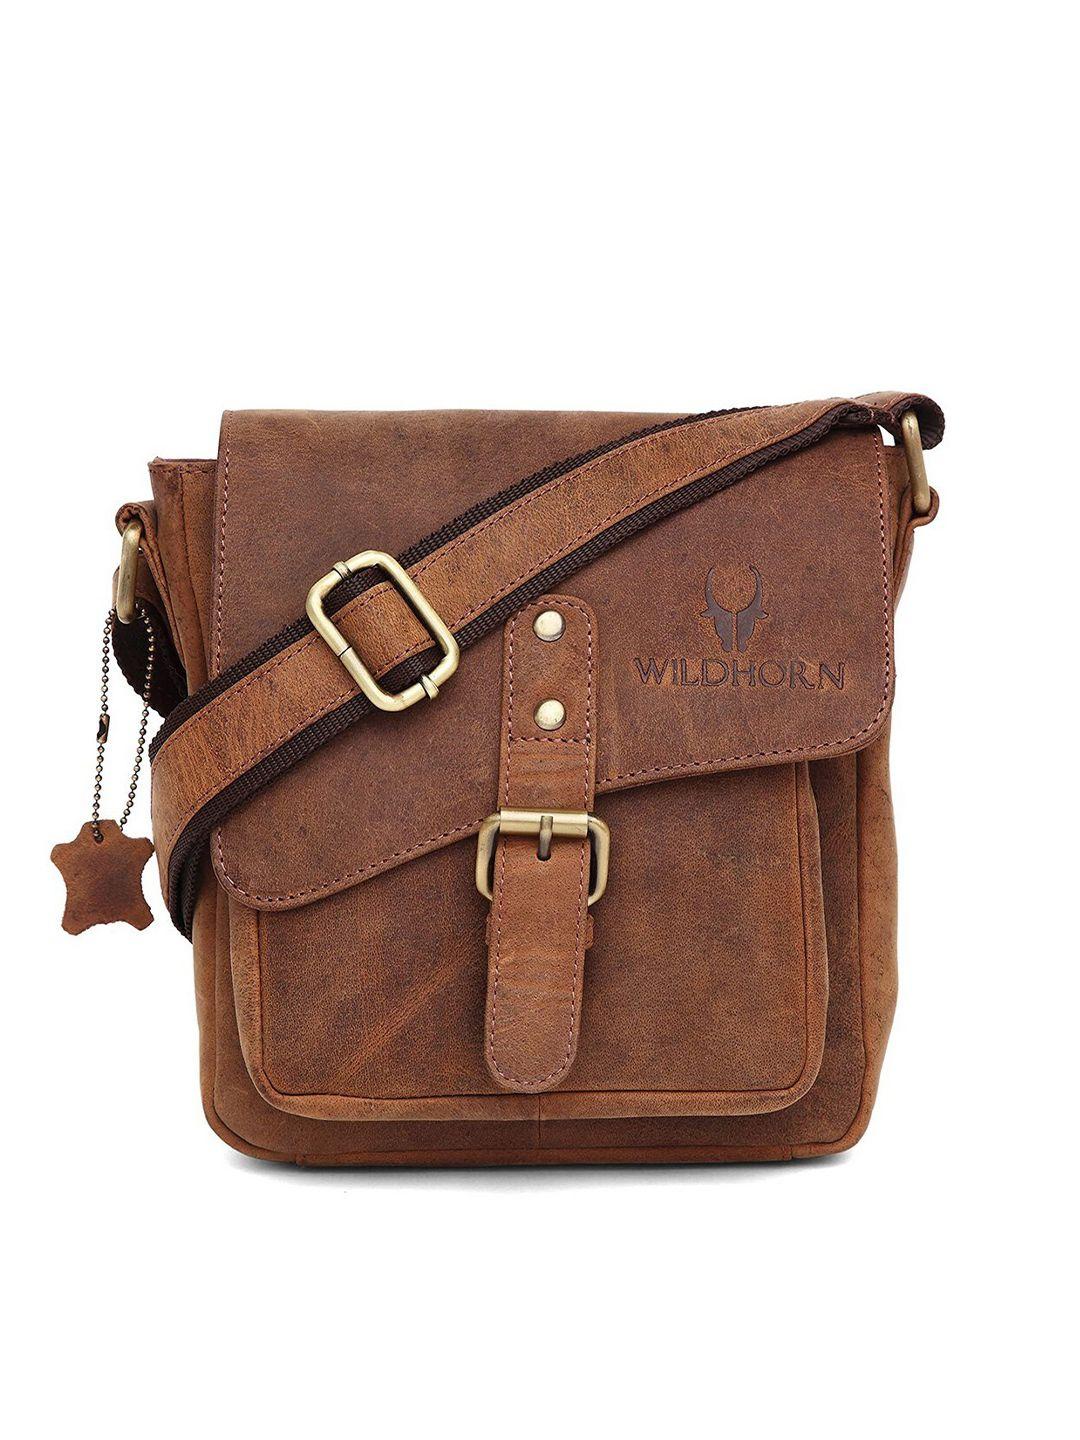 wildhorn men tan solid leather sling messenger bag